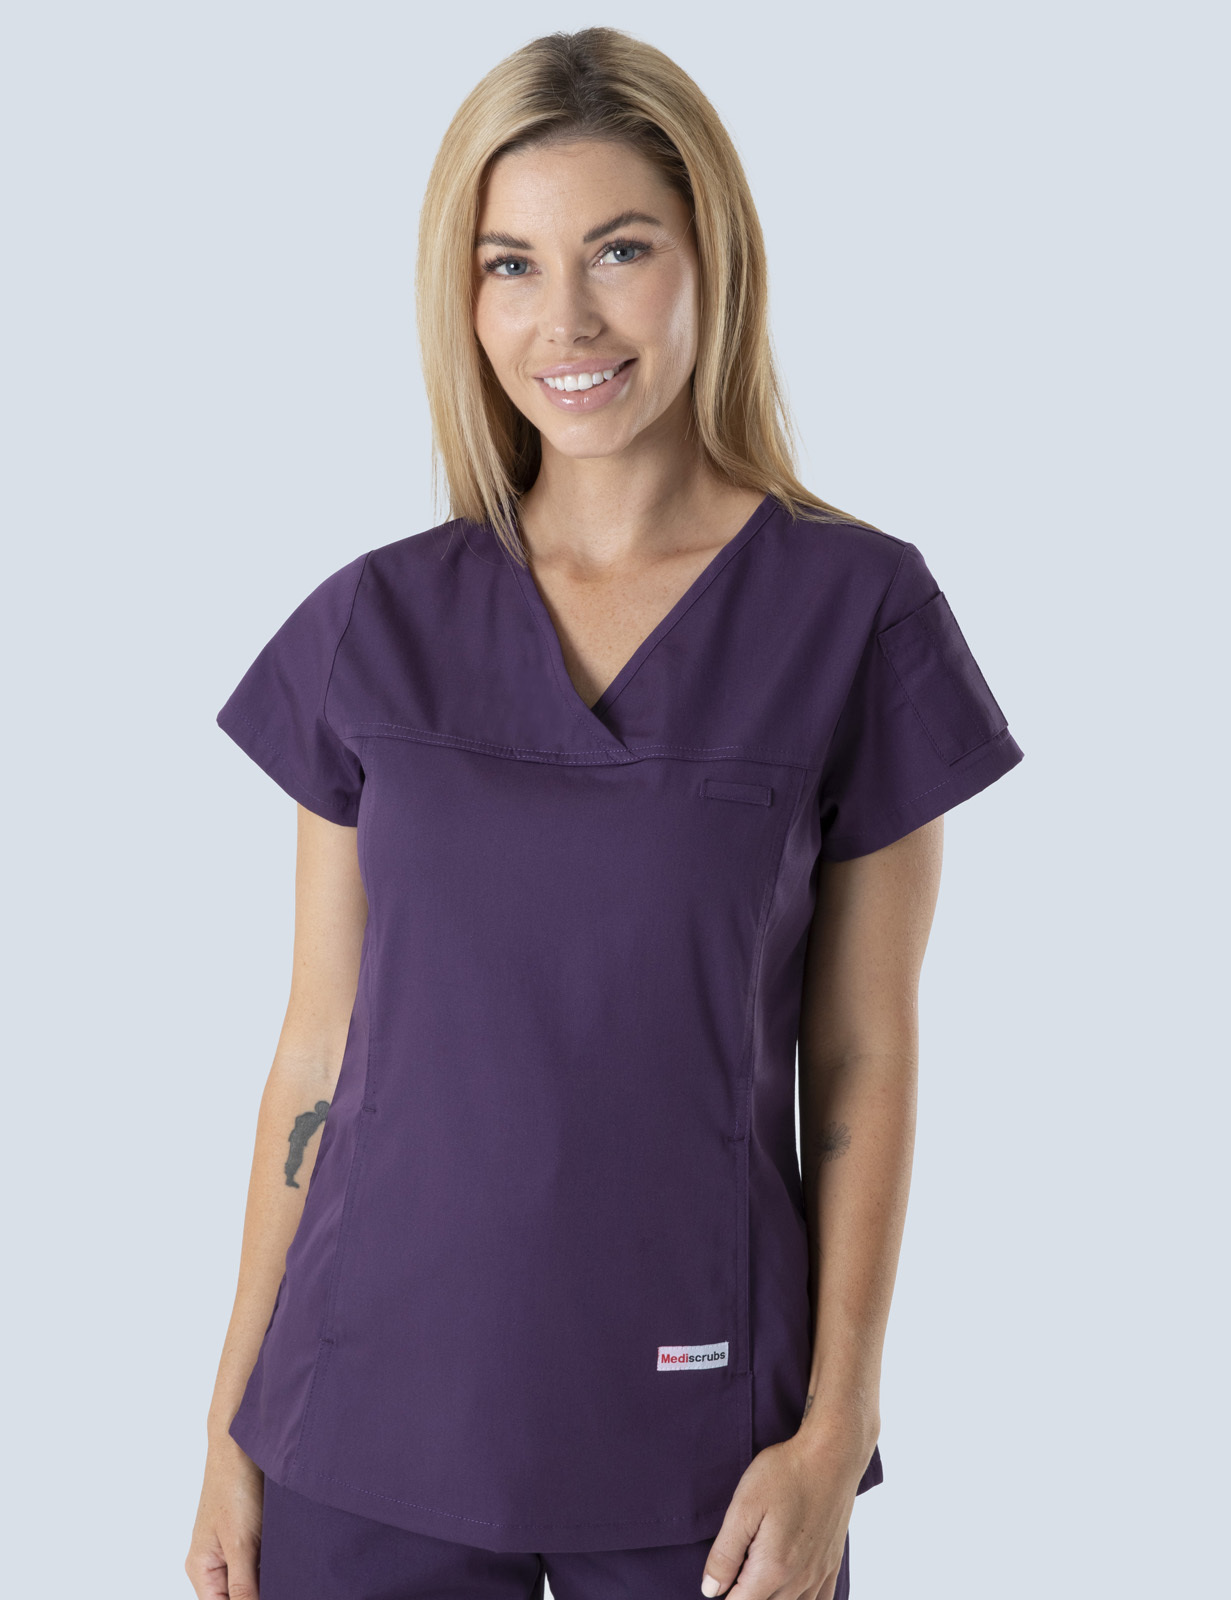 Queensland Children's Hospital Emergency Department Doctor Uniform Top  Bundle (Women's Fit Top in Aubergine  incl Logos)